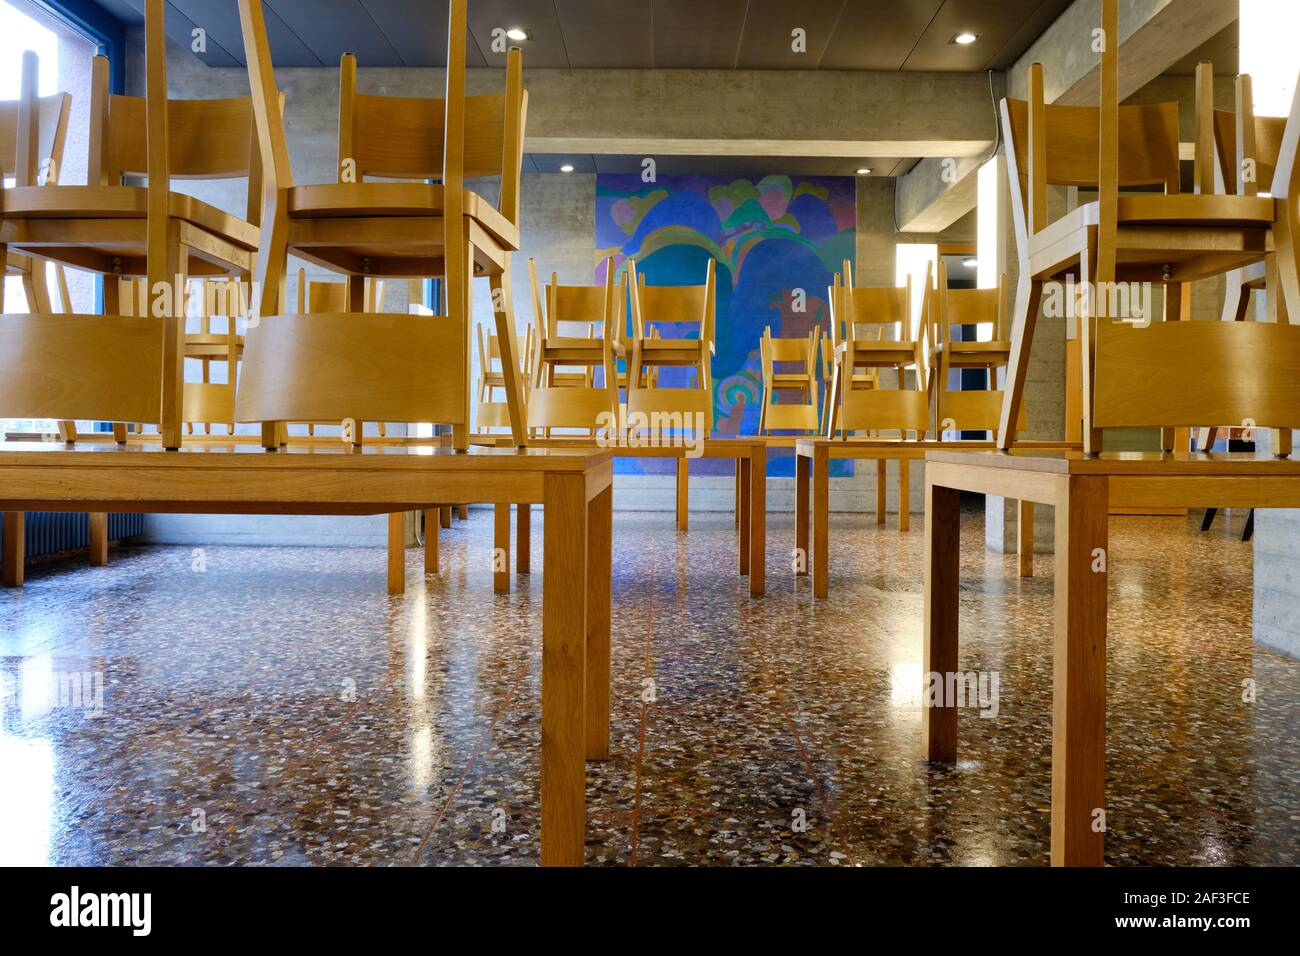 Type d'école cafétéria coin repas avec toutes les chaises posées sur les tables pour le nettoyage des sols Banque D'Images